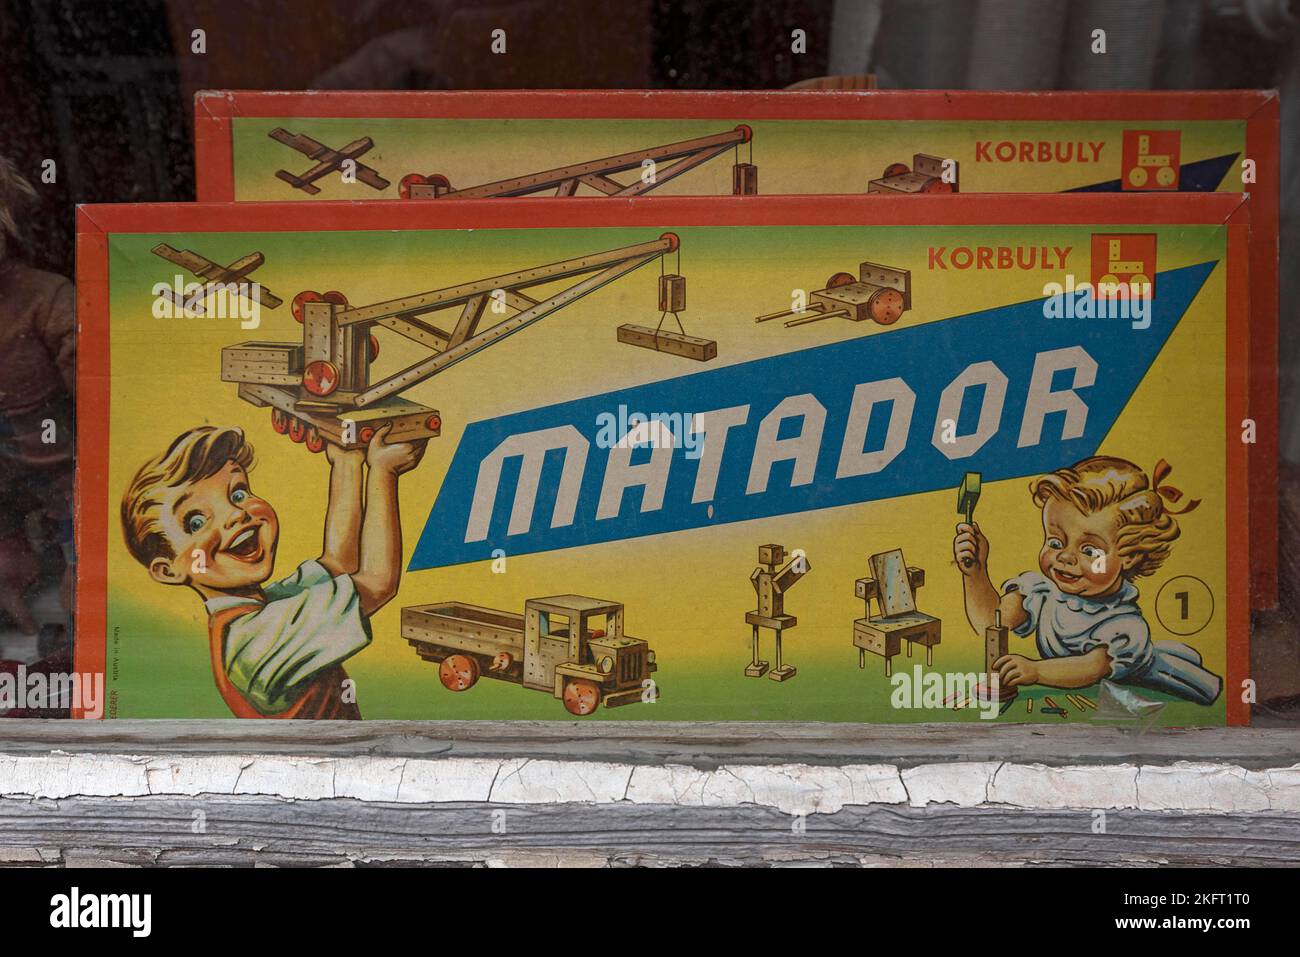 Alte Matador-Bauset-Verpackung aus dem Jahr 1950s im Schaufenster, Lüneburg, Niedersachsen, Deutschland, Europa Stockfoto